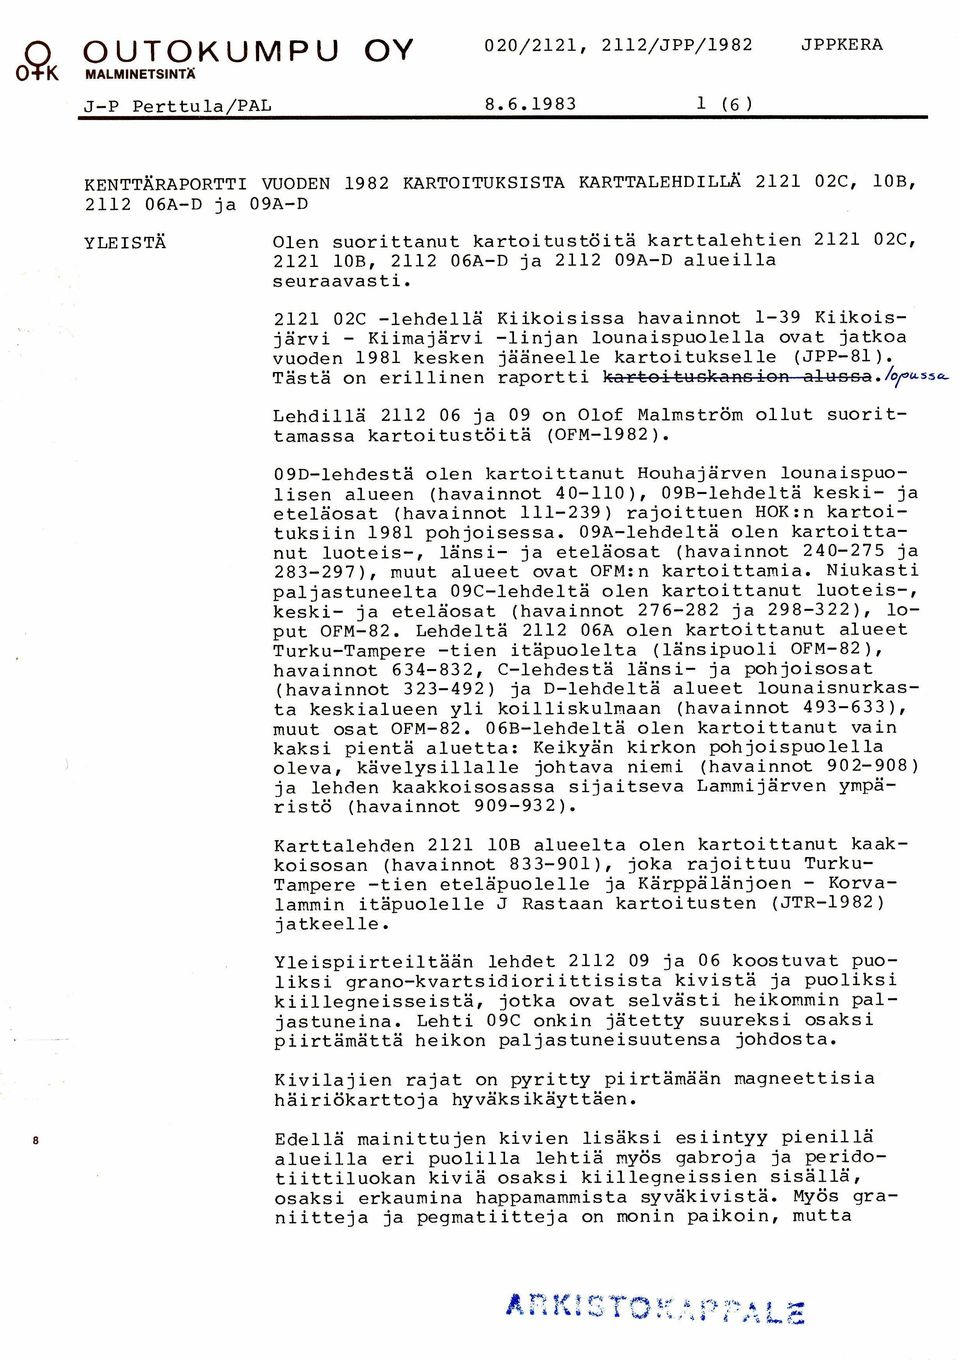 Tasta on erillinen raportti kzrt~it-~sh++&cr: zlnsccl./opussrc Lehdilla 2112 06 ja 09 on Olof Malmstrom ollut suorittamassa kartoitustoita (OFM-1982).